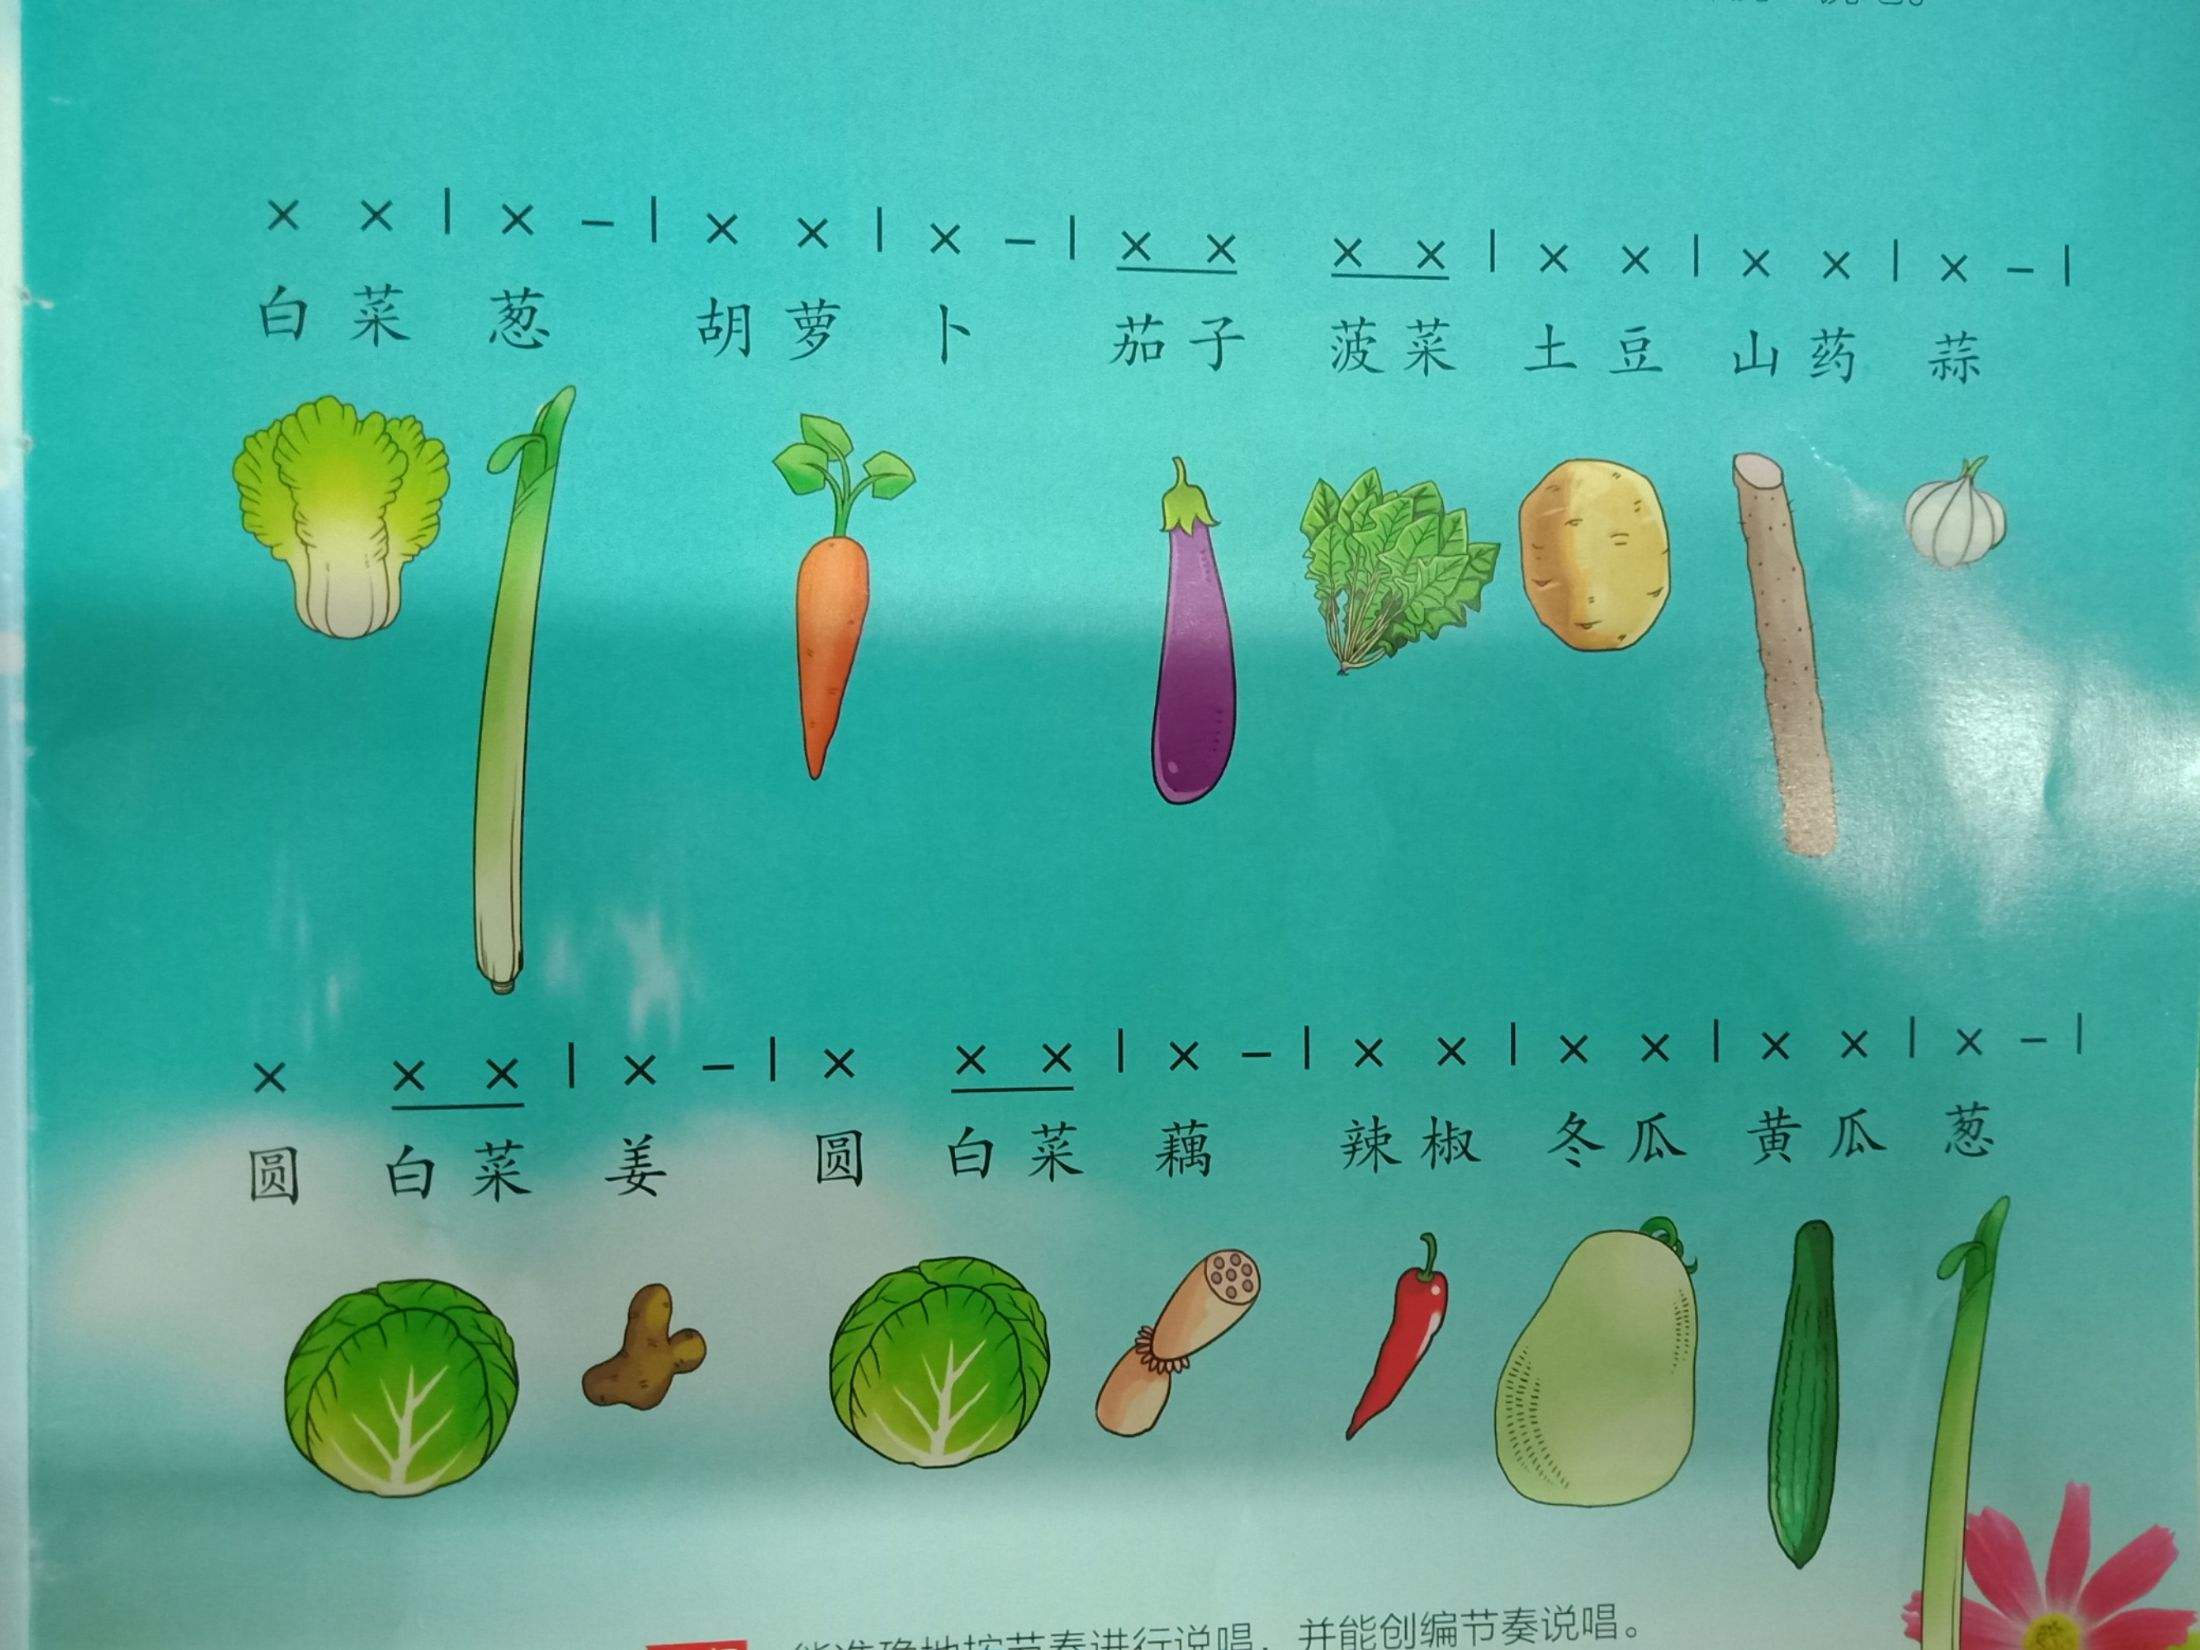 日语蔬菜之歌歌词谐音中文(日语蔬菜之歌歌词谐音中文翻译)